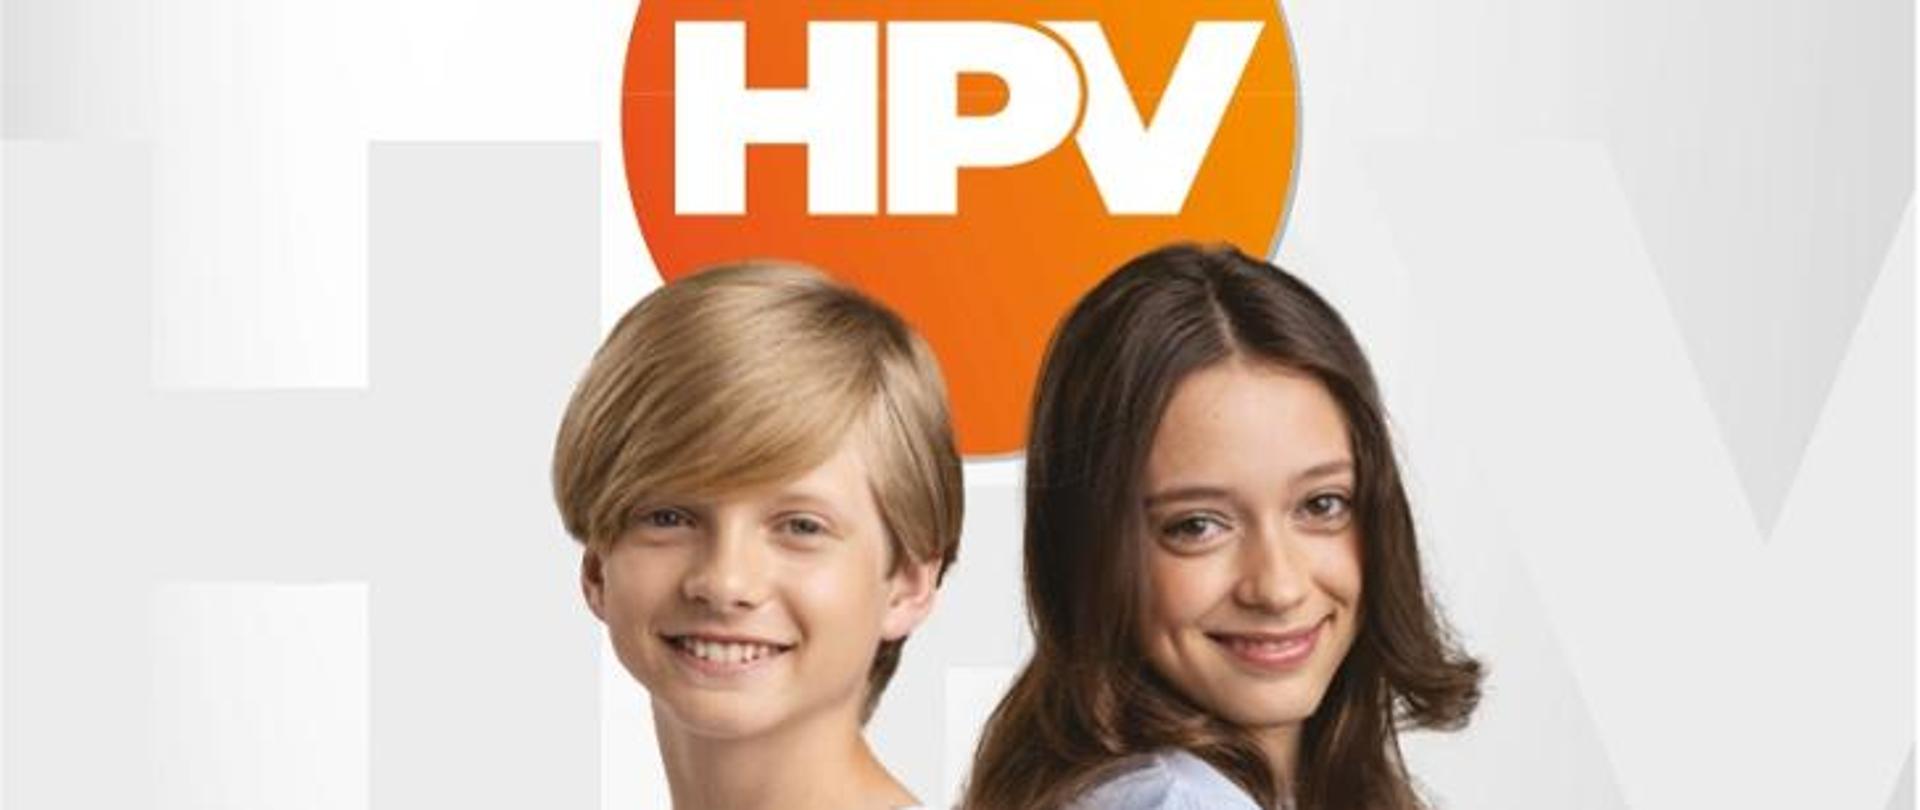 zdjęcie przedstawia chłopczyka i dziewczynkę w wieku około 12 lat z logiem HPV na pomarańczowym tle